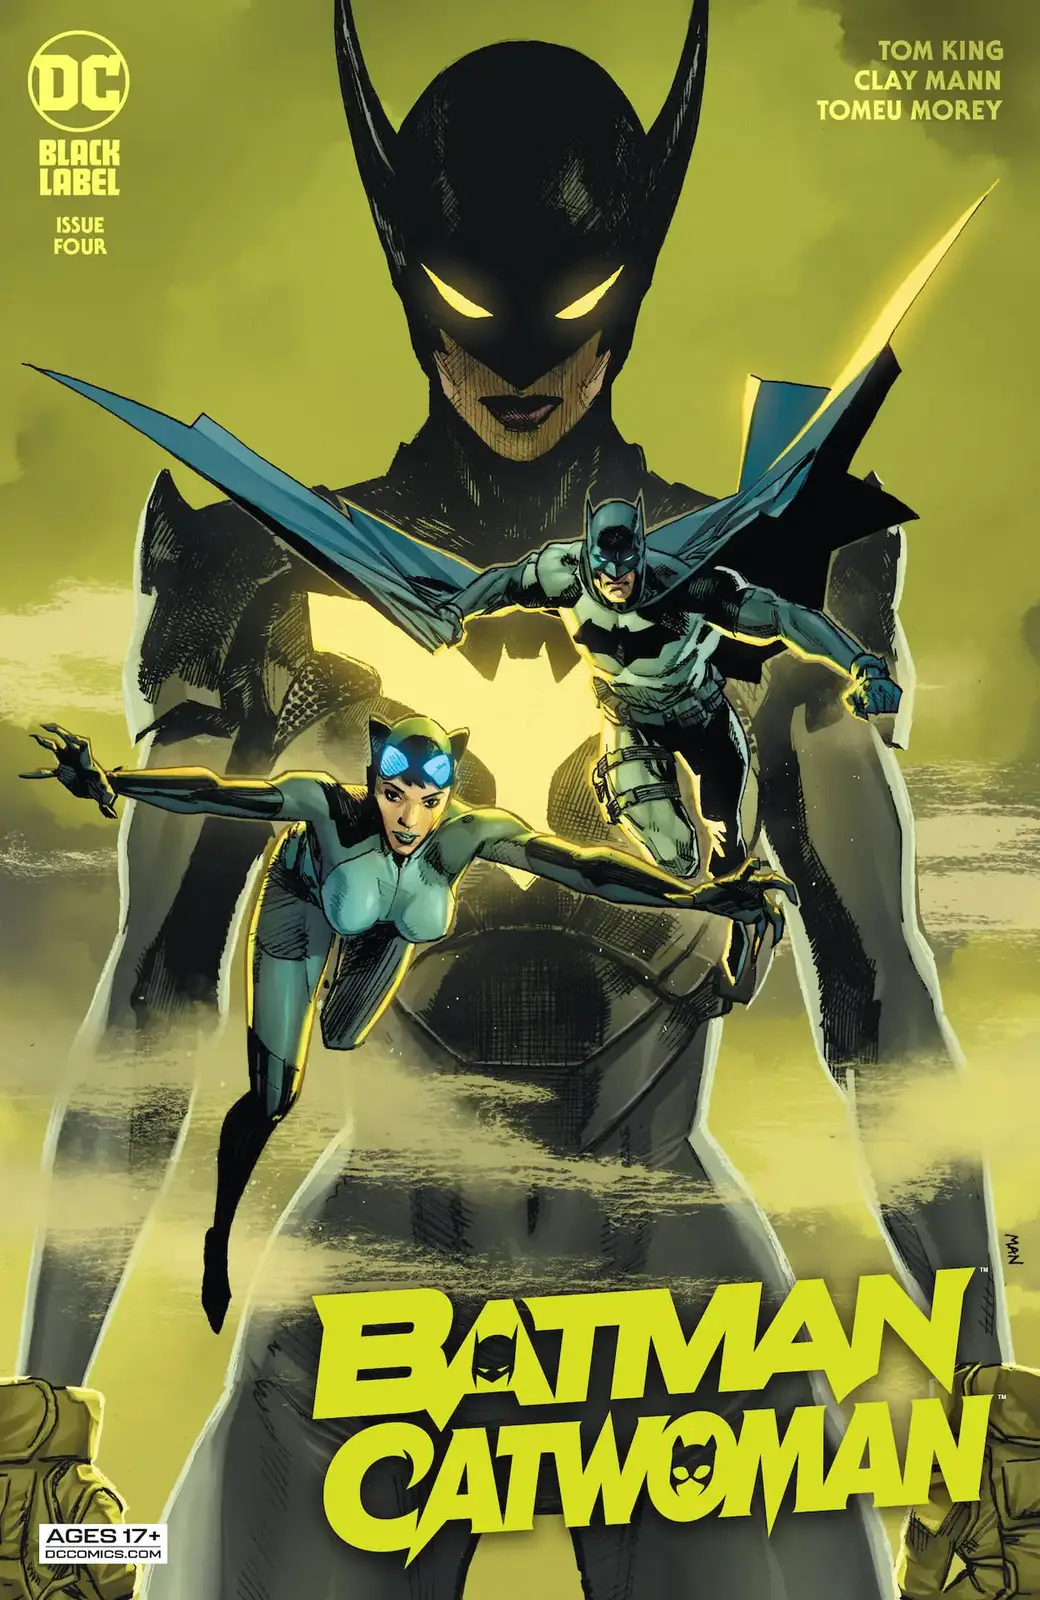 2020 Batman Catwoman #2 DC Comics A cvr main Clay Mann releasing 12/02/2020